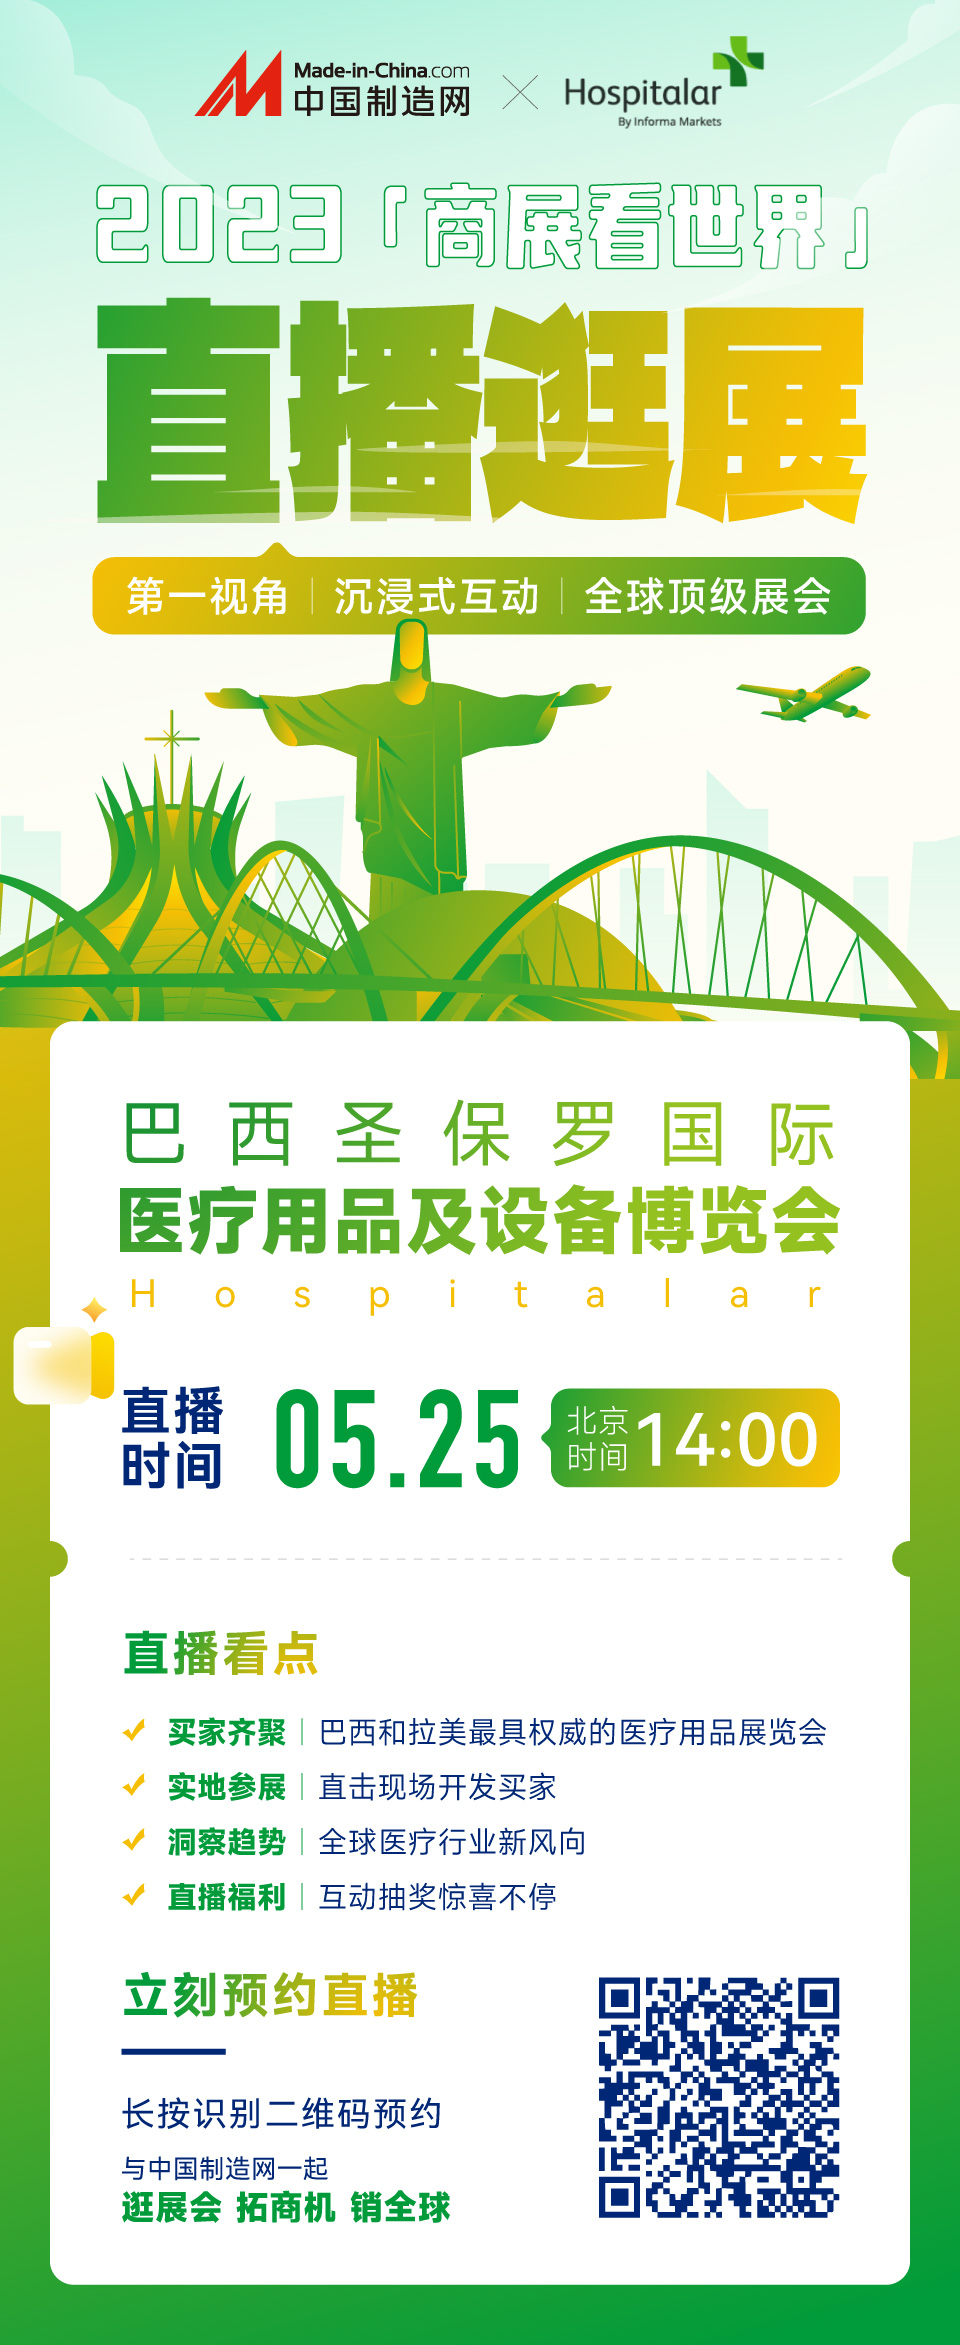 5月25日，中国制造网带你一起去看南美最大医疗展！